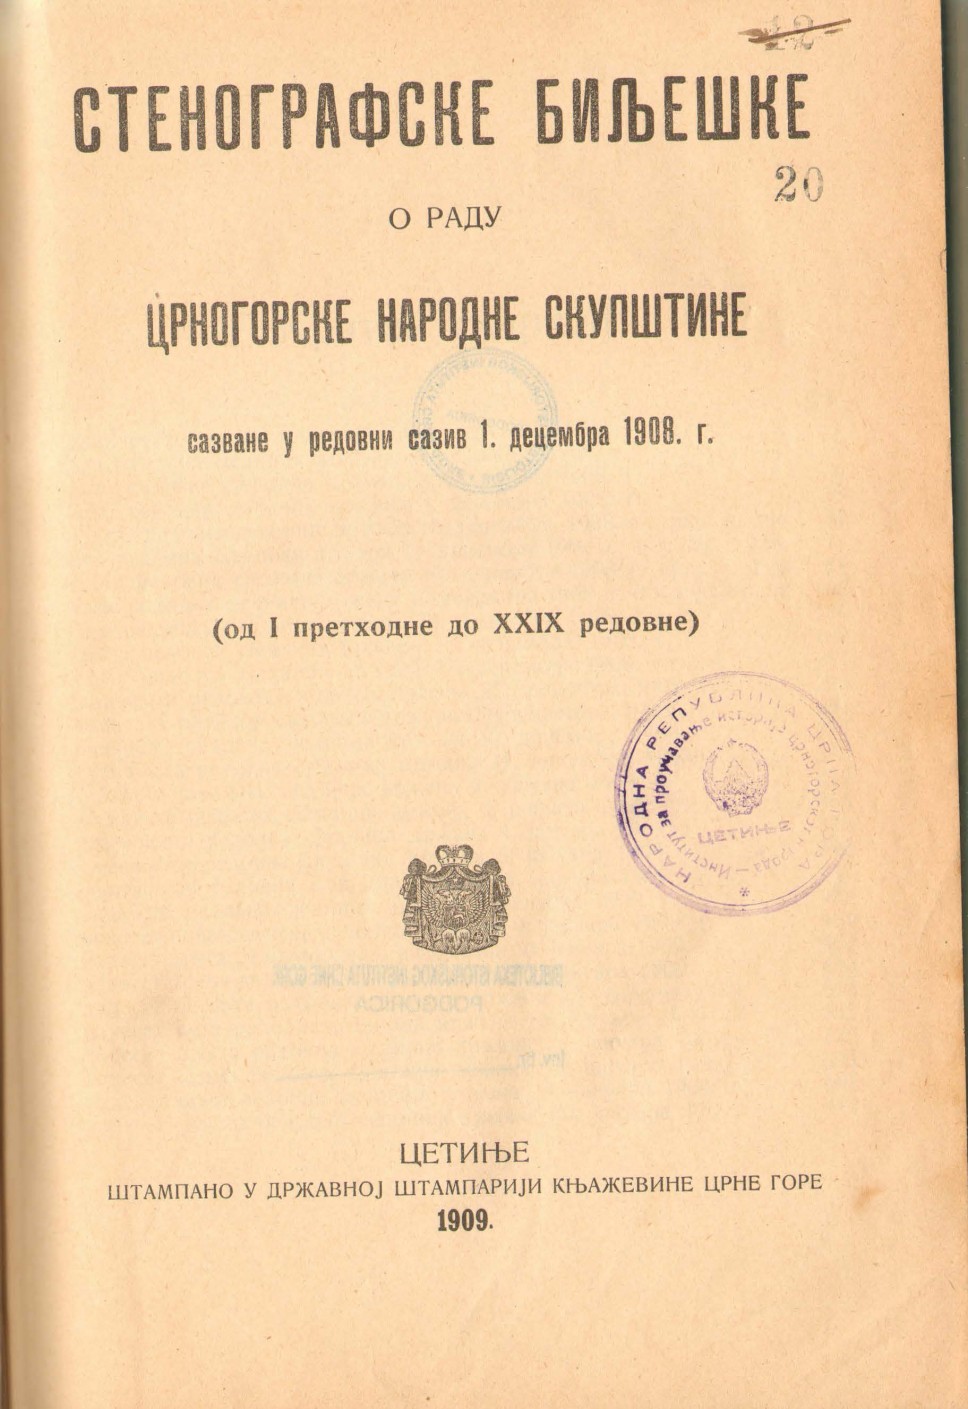 Stenografske bilješke crnogorske narodne skupštine, 1908